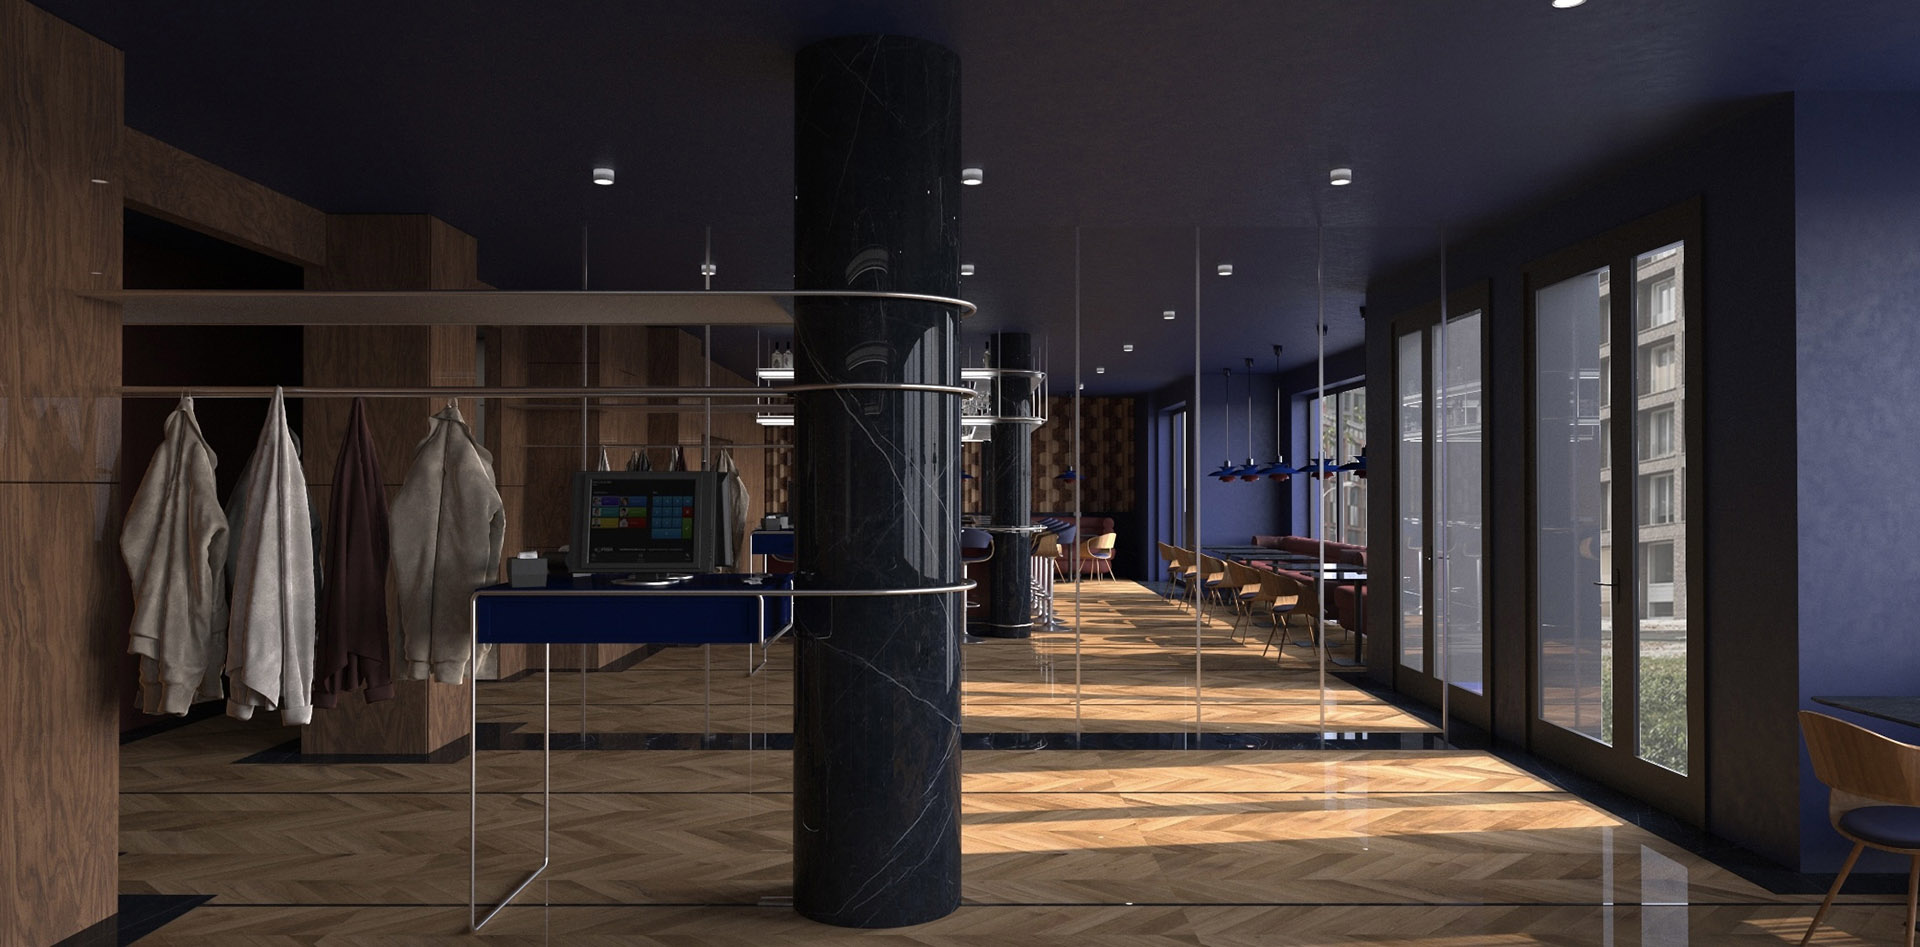 Wizualizacja wnętrza baru, ciemne wnętrze połączenie granatu i stolarki. Widok na wejście ( Bar w odbiciu lustrzanej ściany )